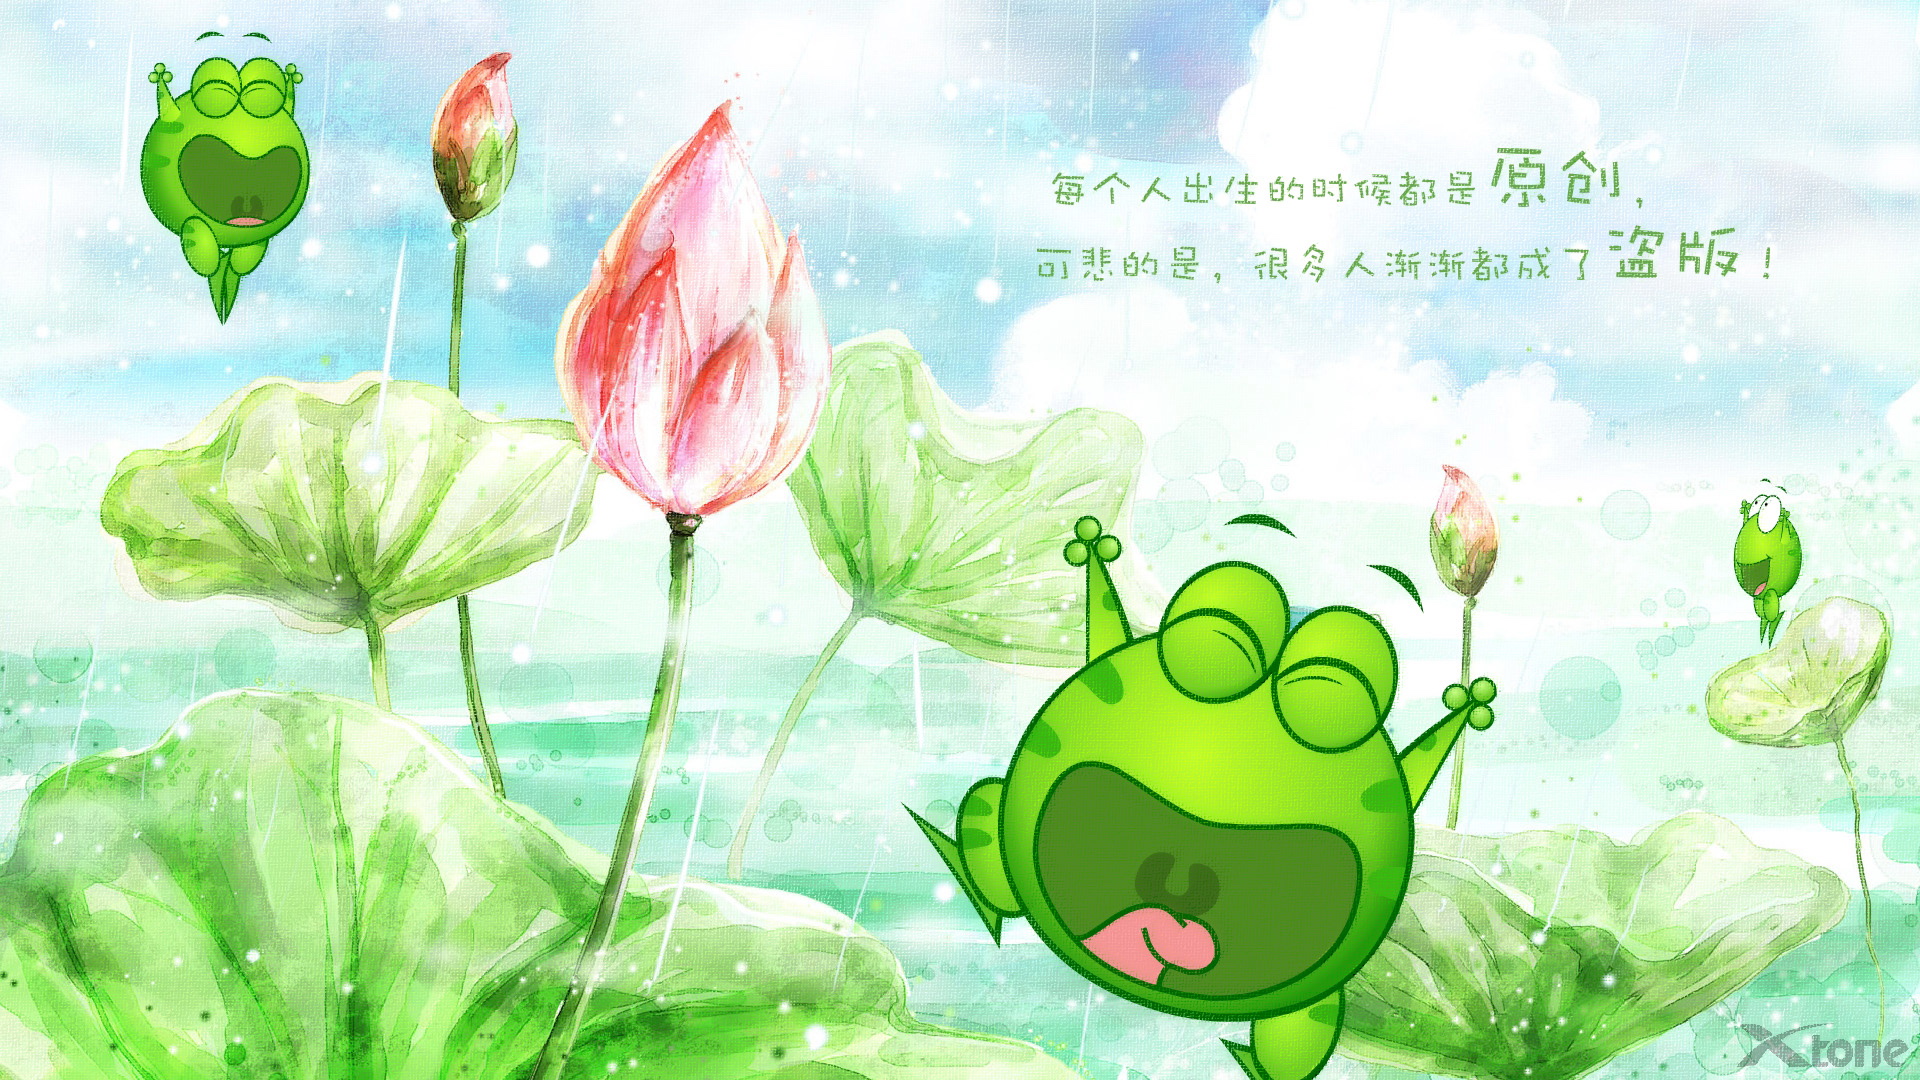 绿豆蛙 可爱青蛙卡通宽屏壁纸(38)